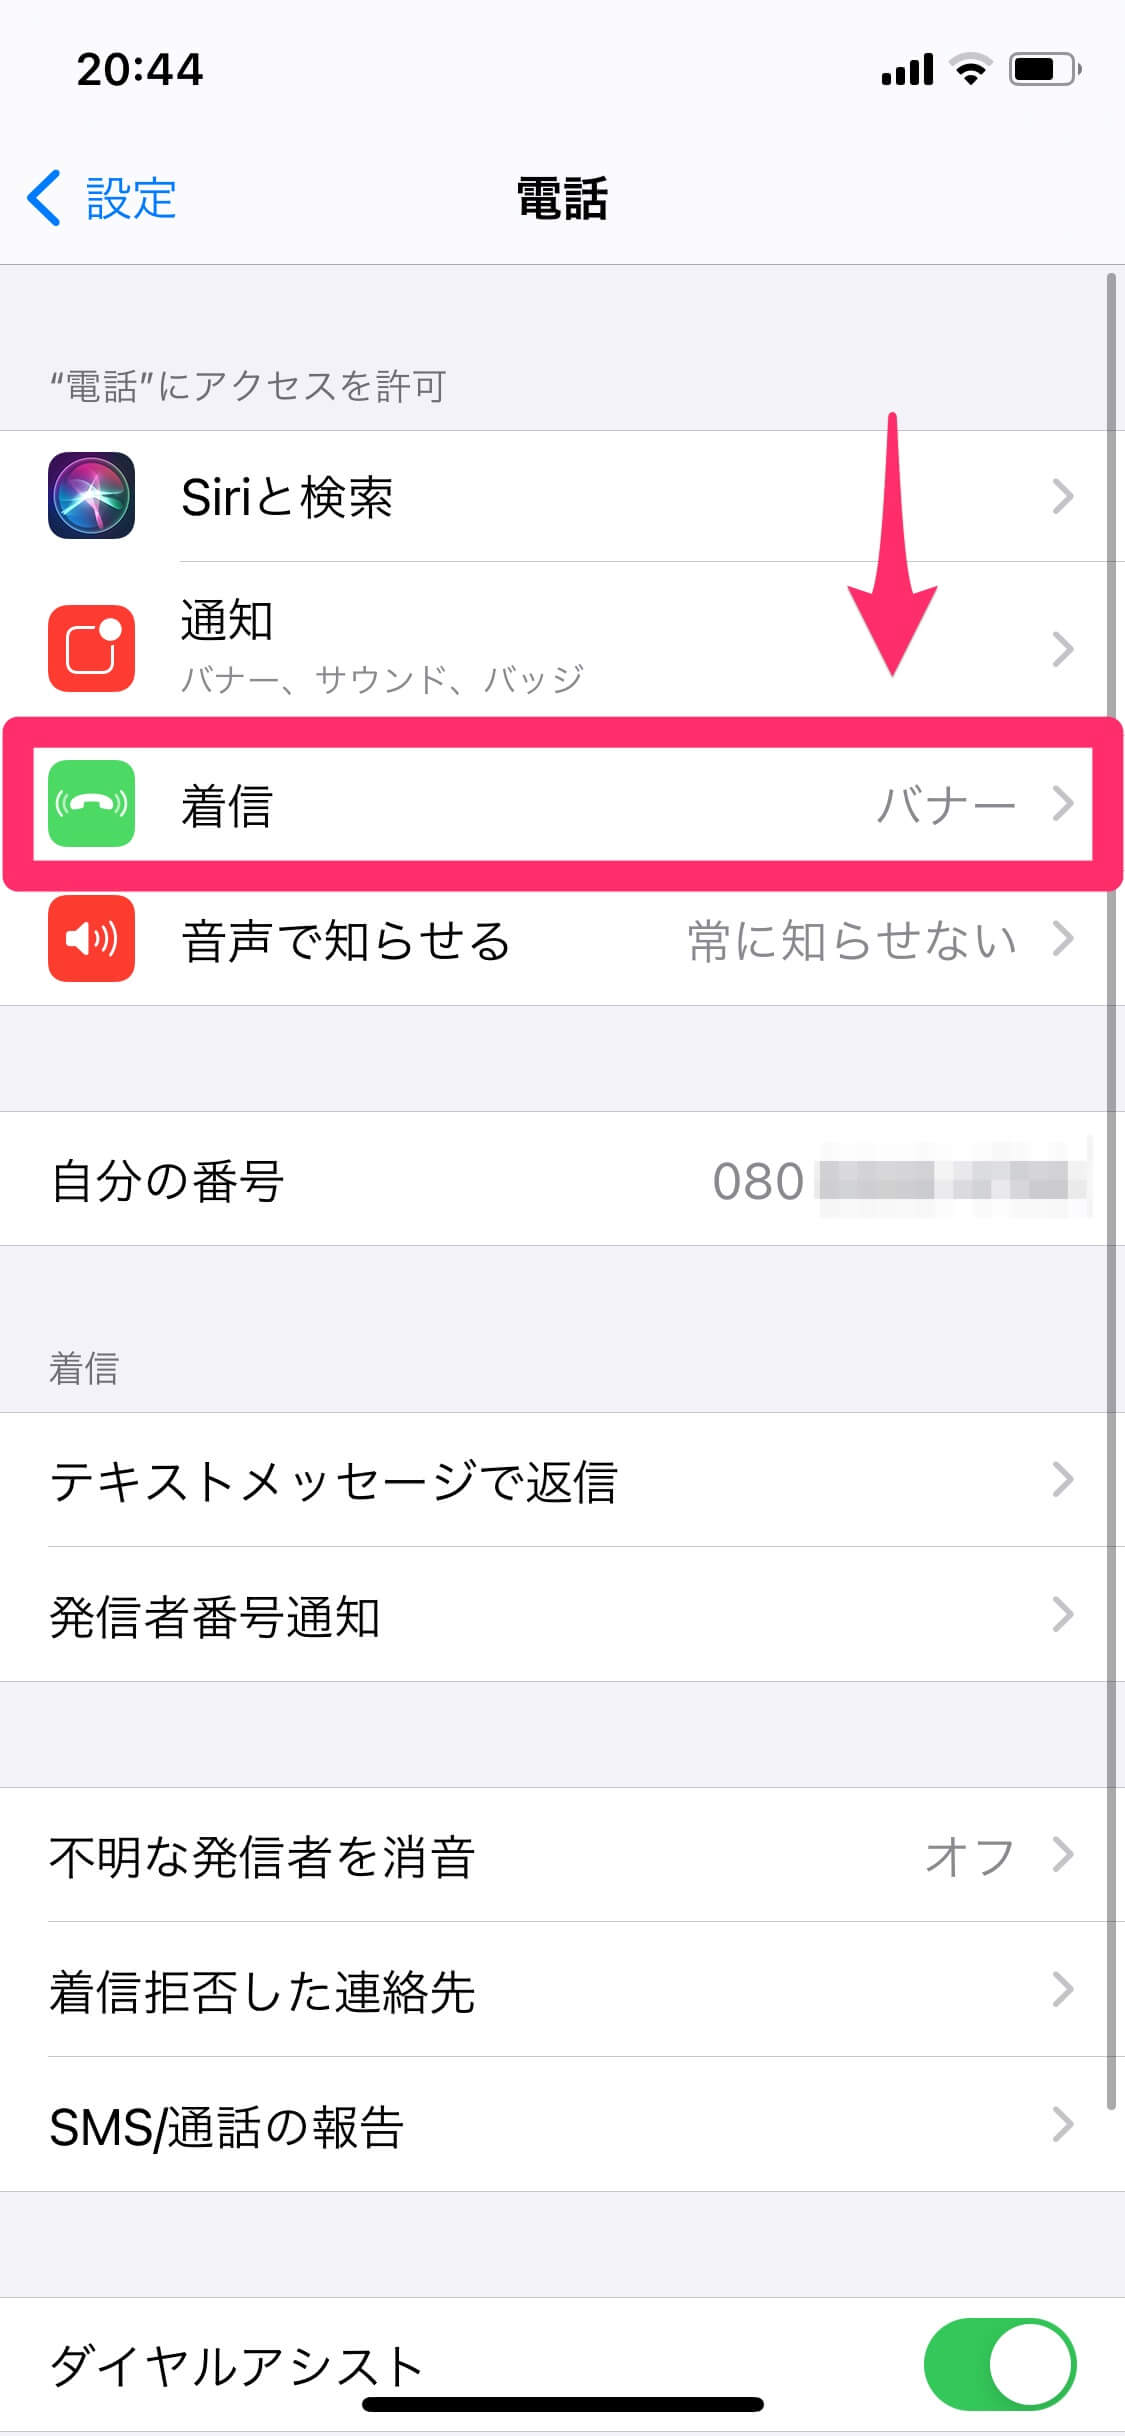 【iOS 14】電話の通知が小さくなった!? 元に戻すには着信の設定を「フルスクリーン」に